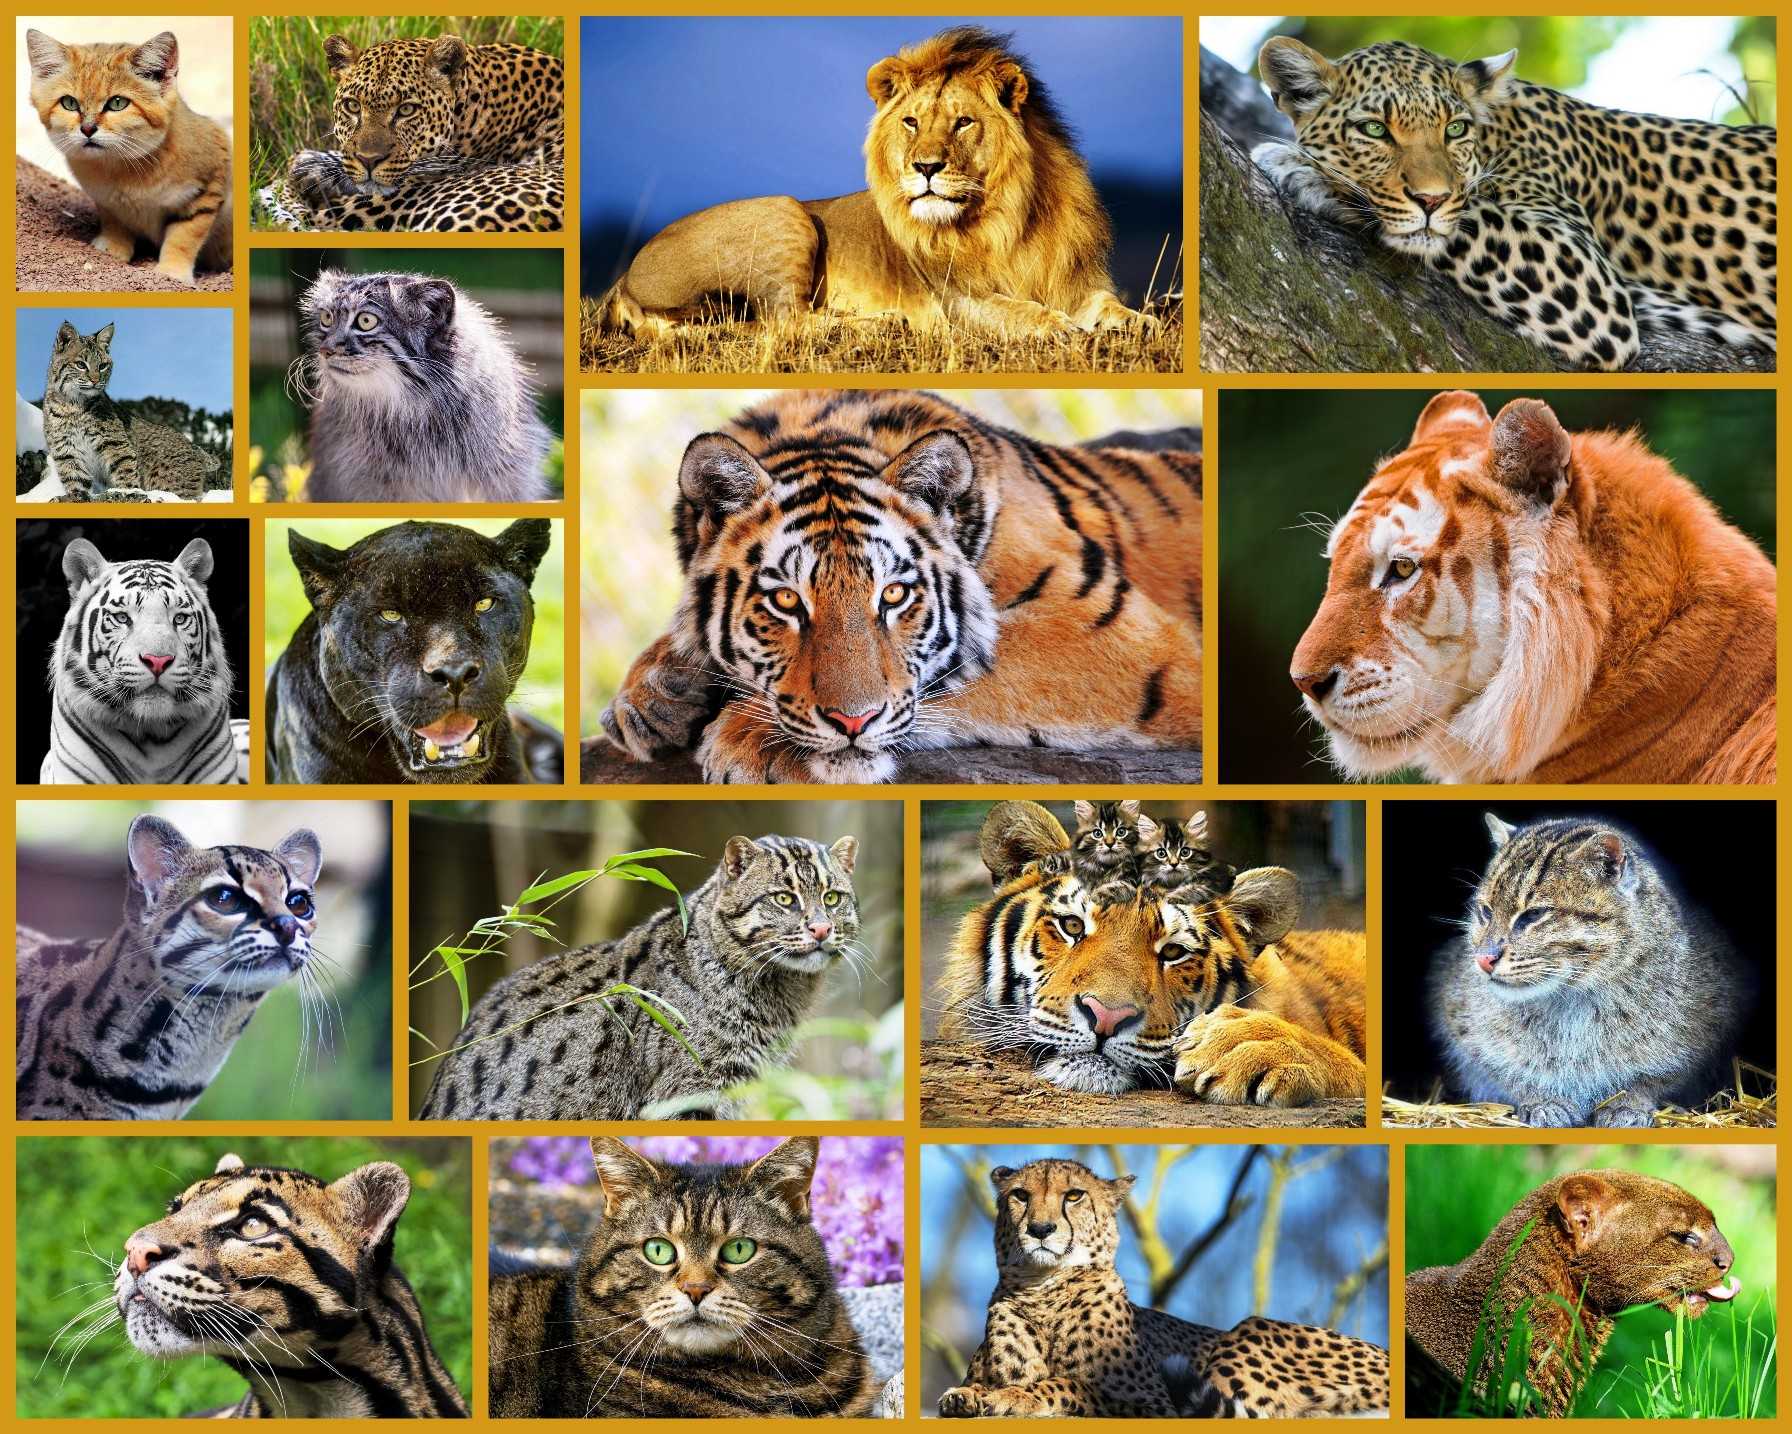 Животные россии - млекопитающие, птицы, рептилии, амфибии, рыбы и другая фауна — природа мира